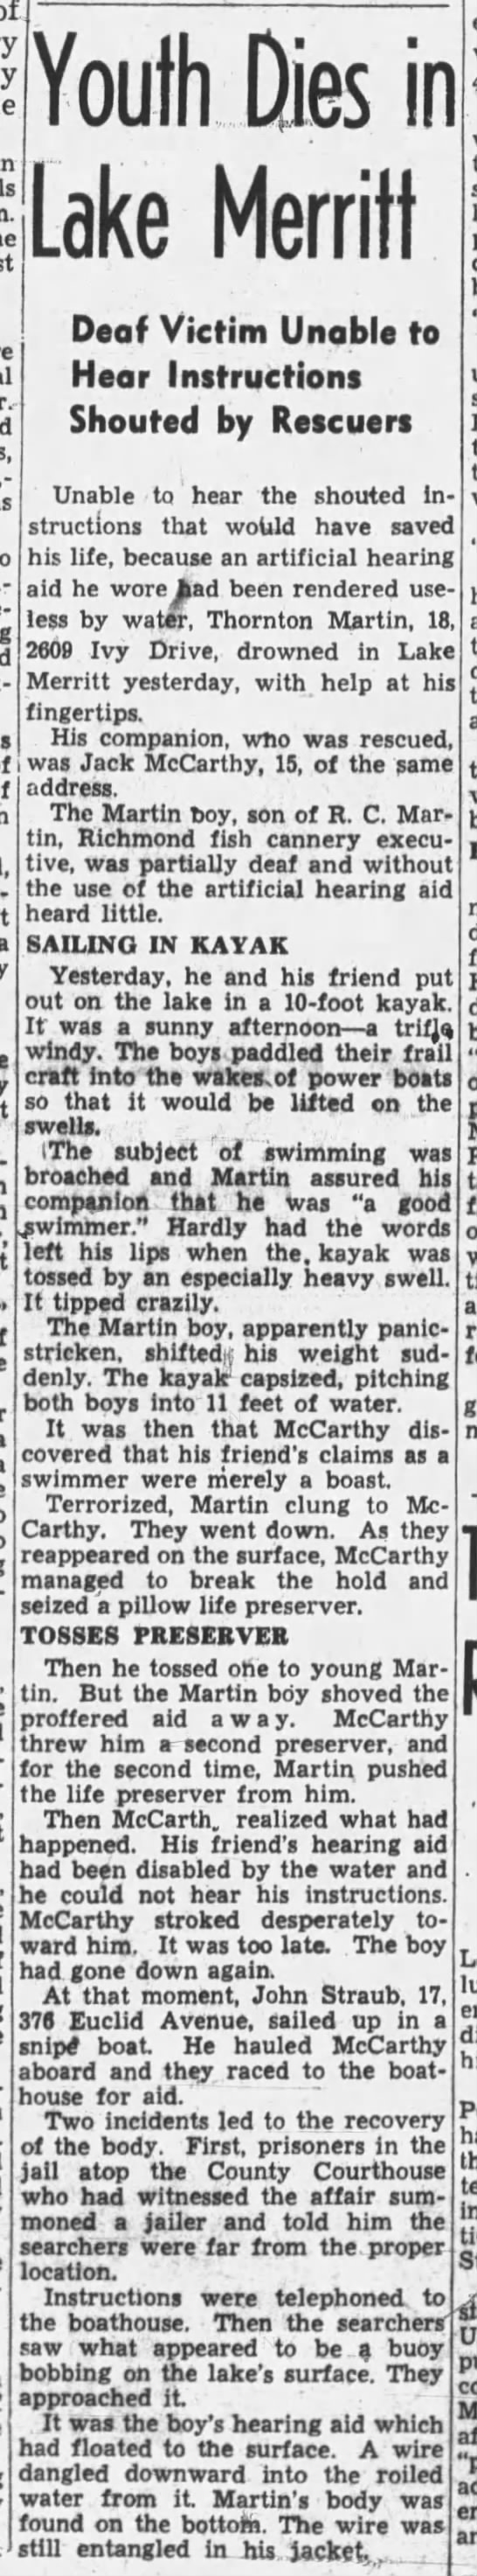 Thornton Martin drowns in Lake Merritt - 